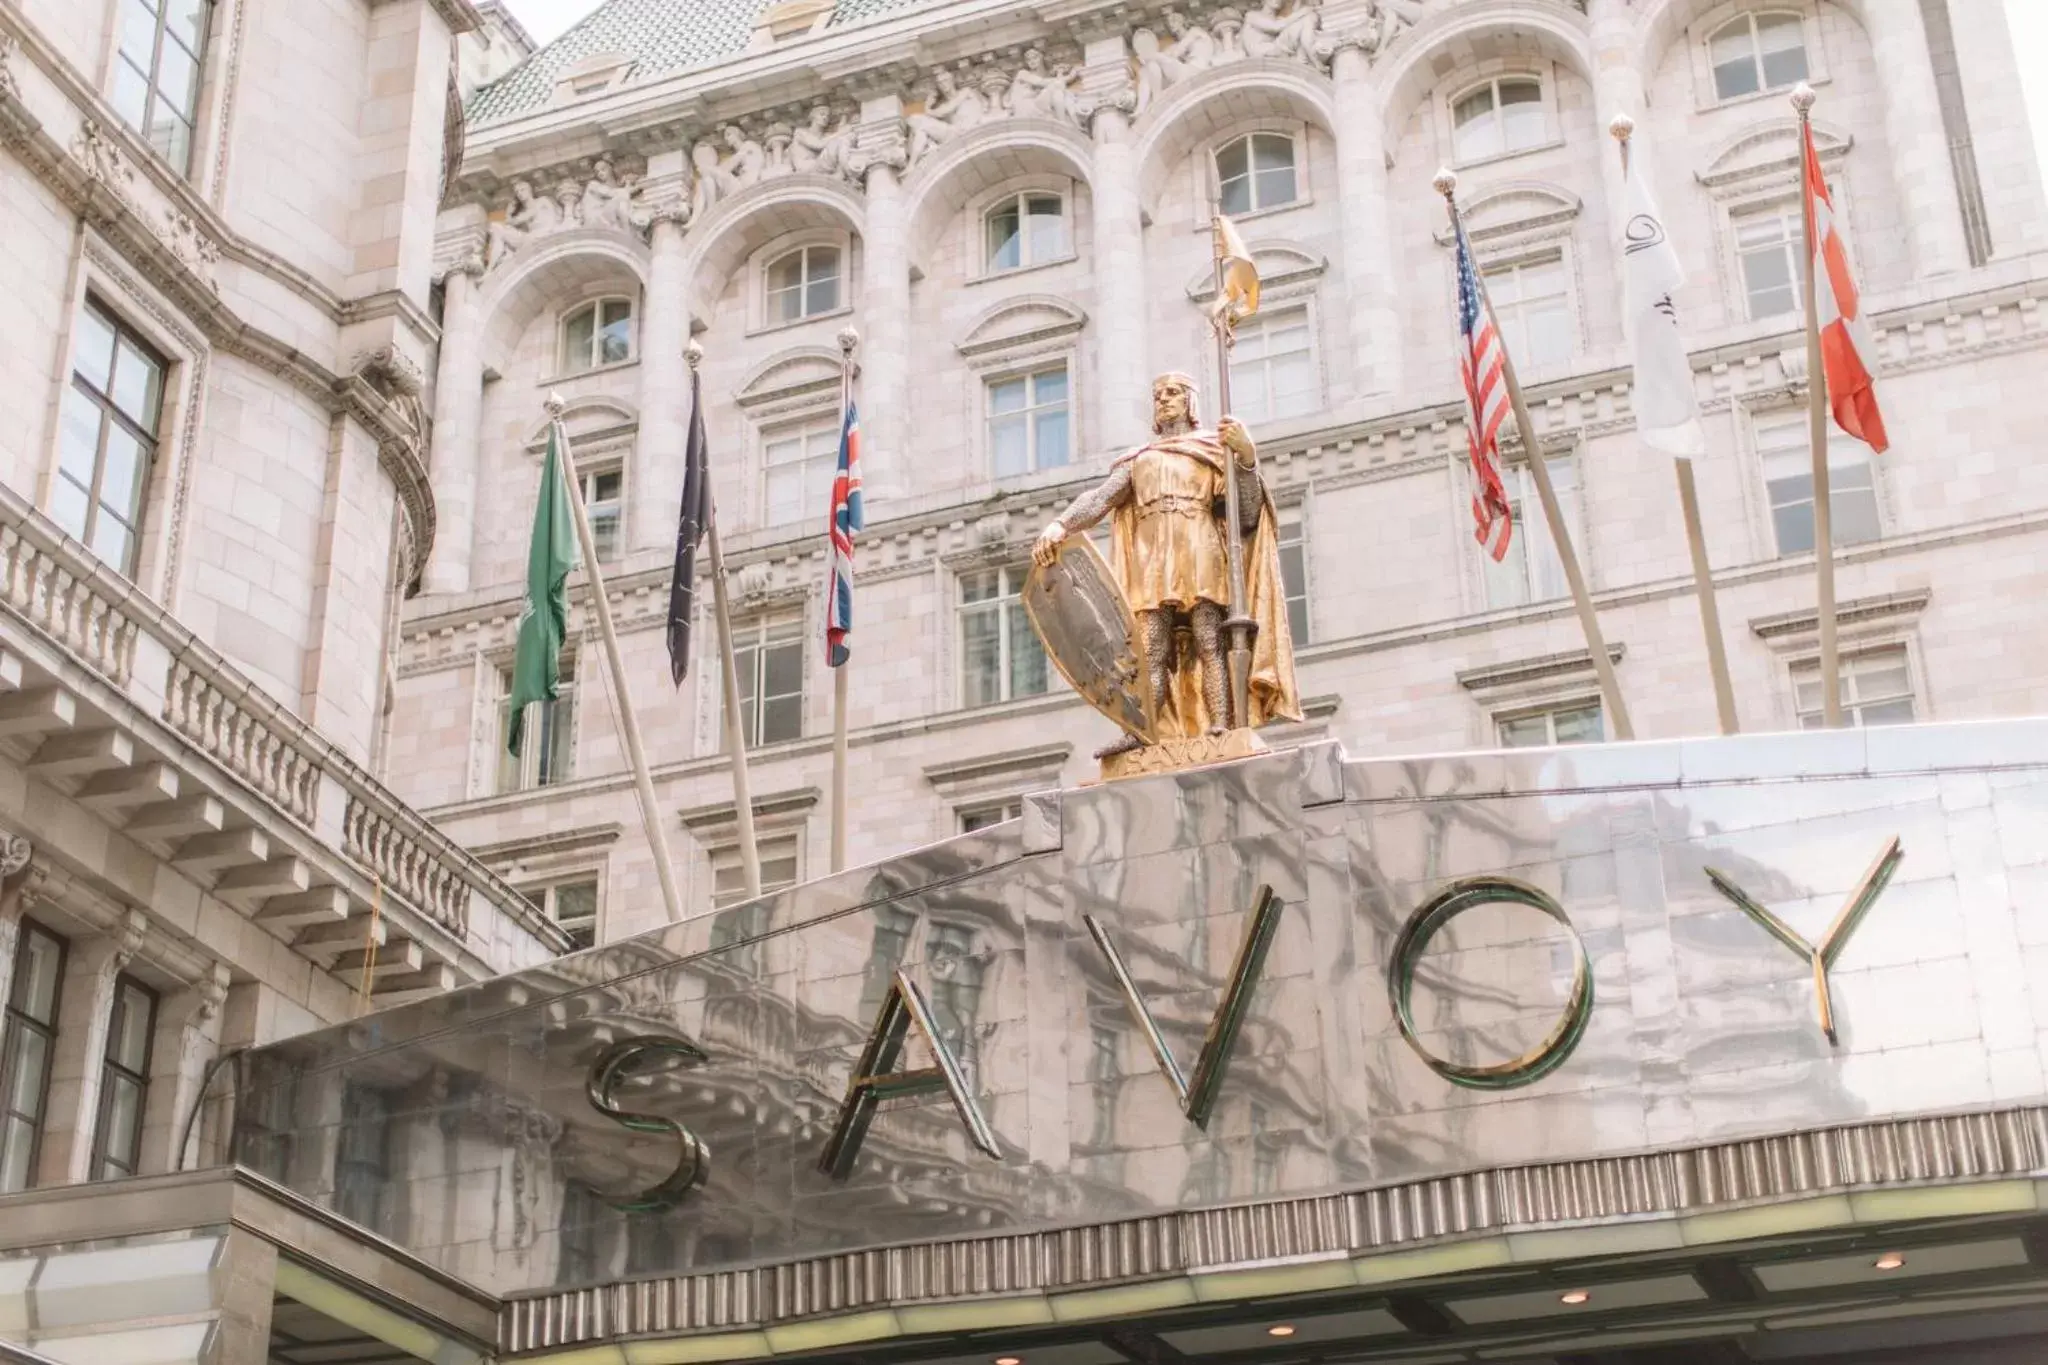 Facade/entrance in The Savoy